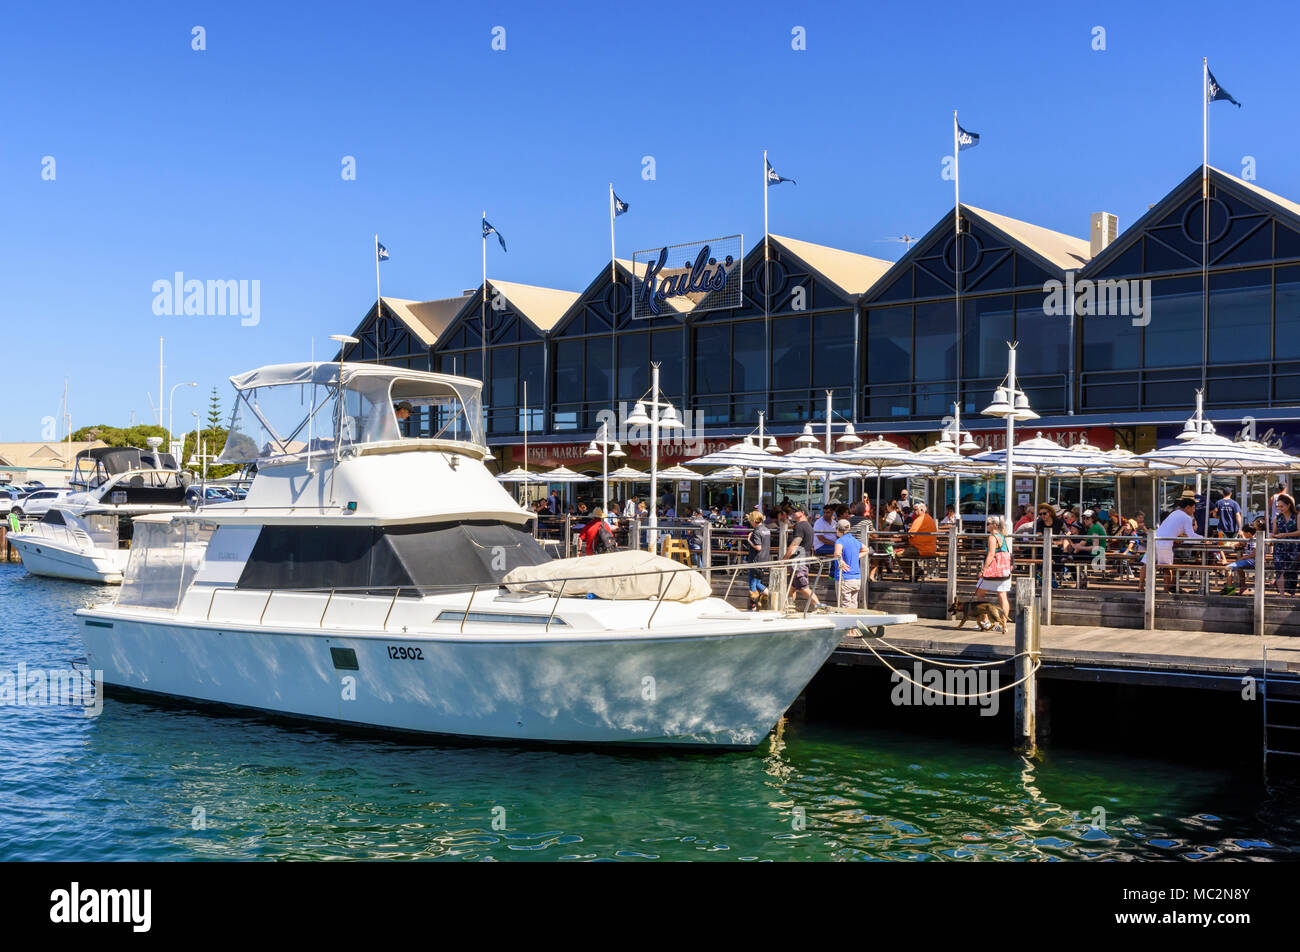 Kailis Bros restaurant de fruits de mer le long de la promenade riveraine à Fremantle Fishing Boat Harbour Fremantle, Australie occidentale, Australie Banque D'Images